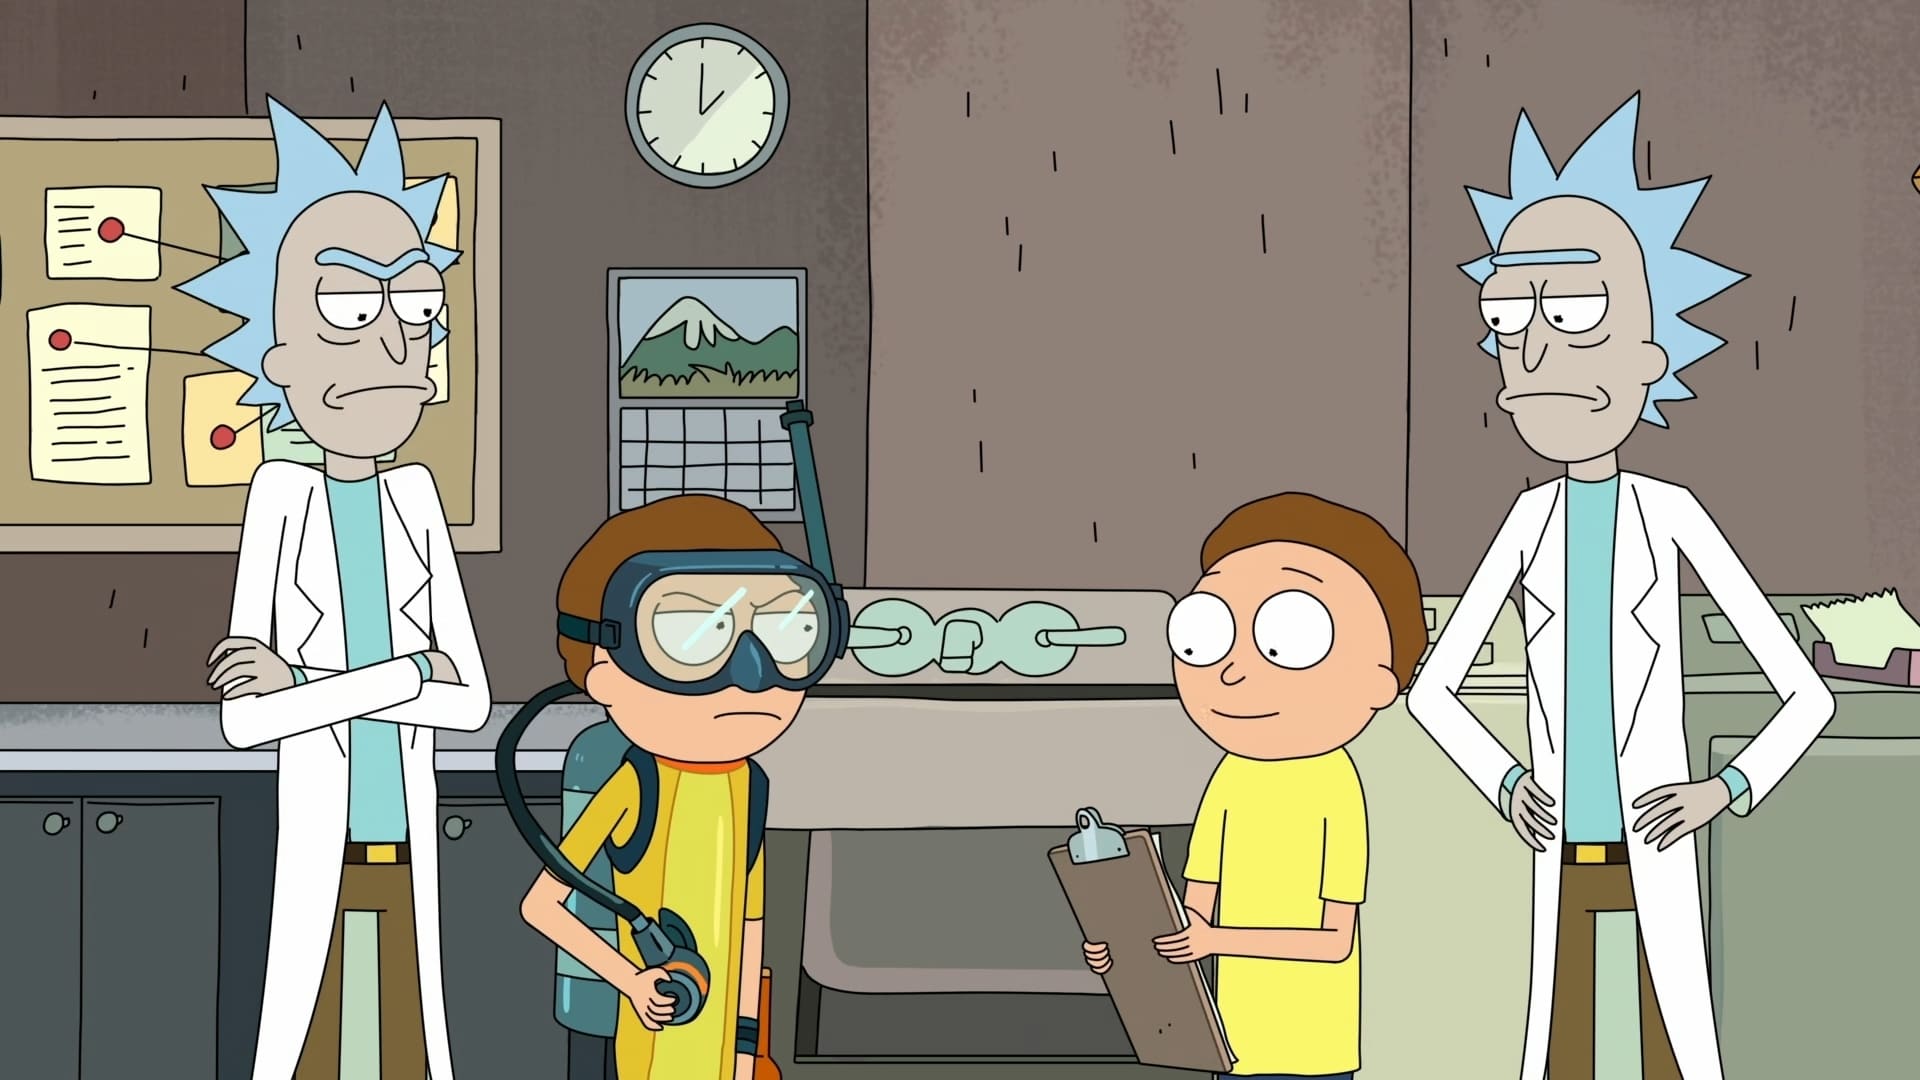 Rick and Morty - Season 3 Episode 7 : The Ricklantis Mixup